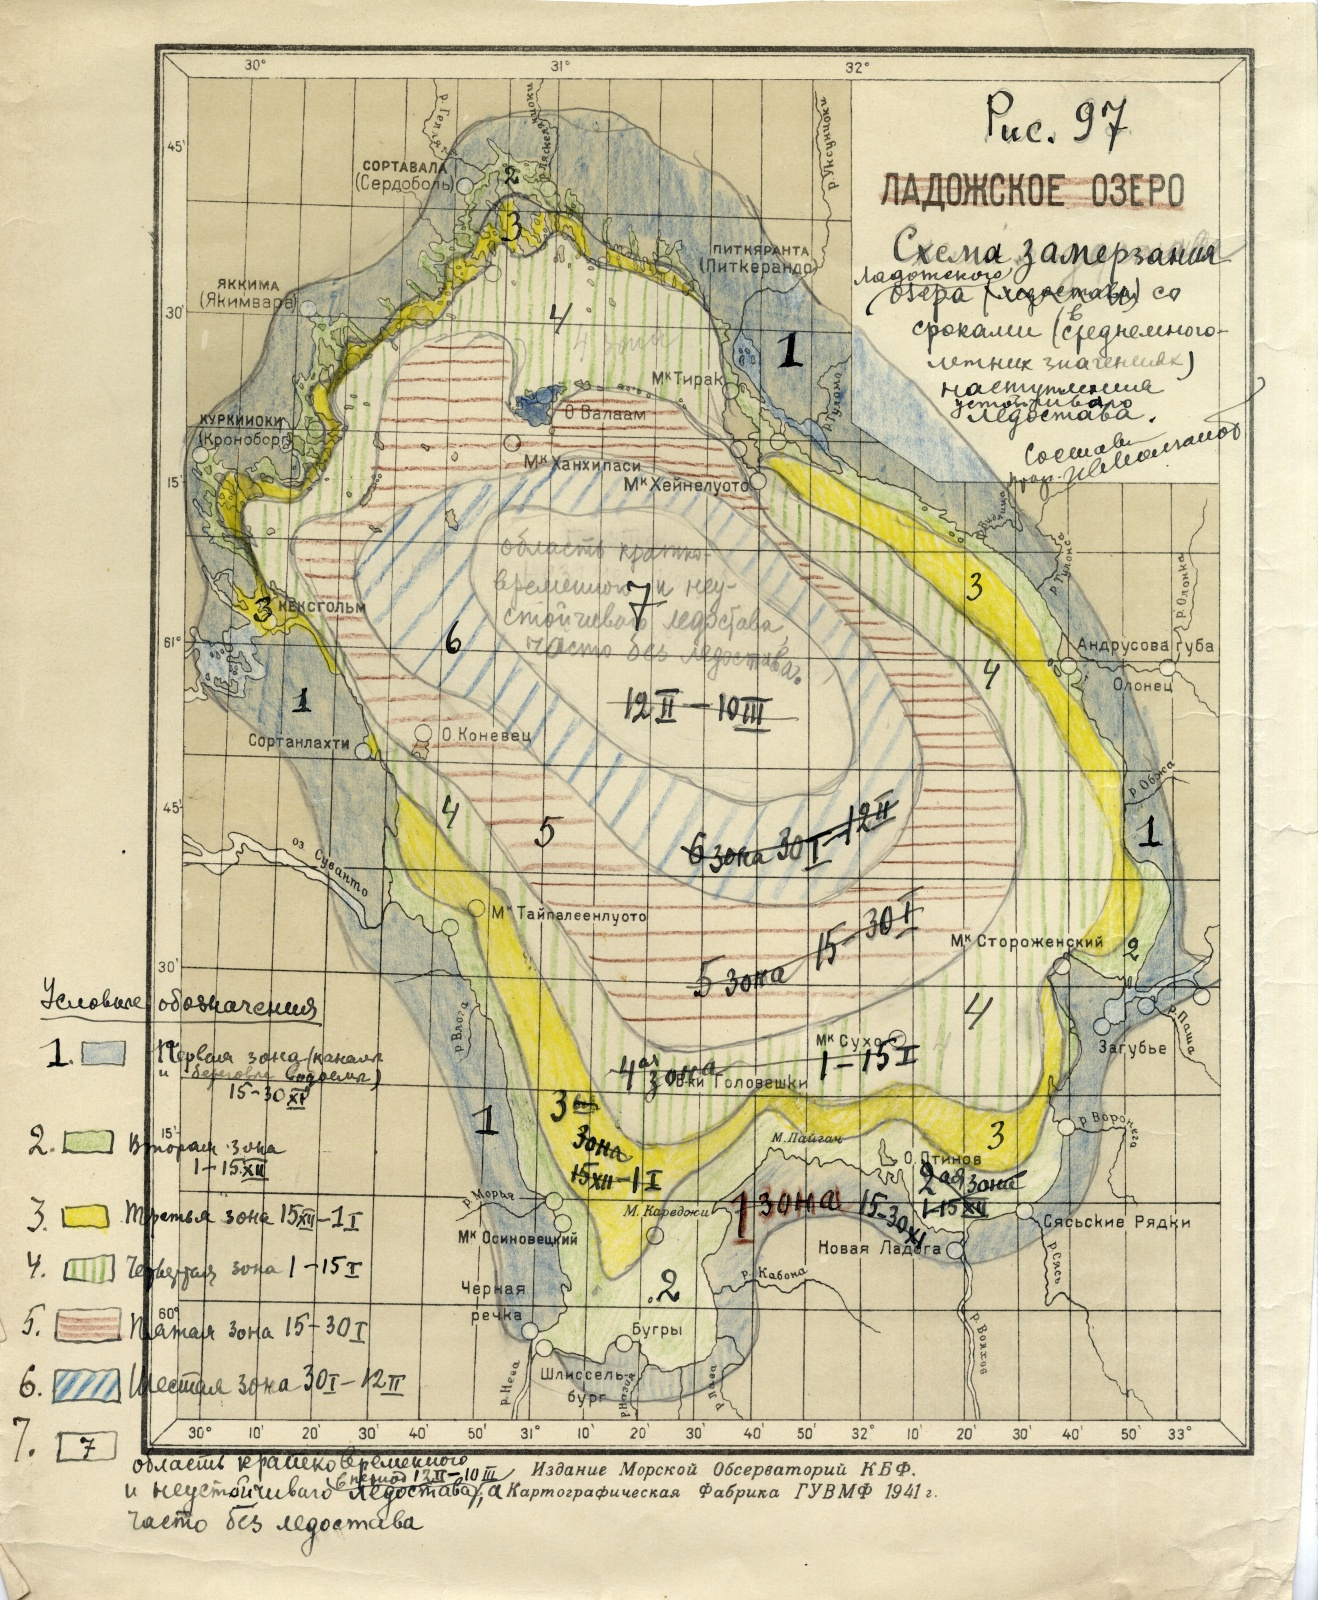 Схема замерзания Ладожского озера. Фото: Научный архив РГО